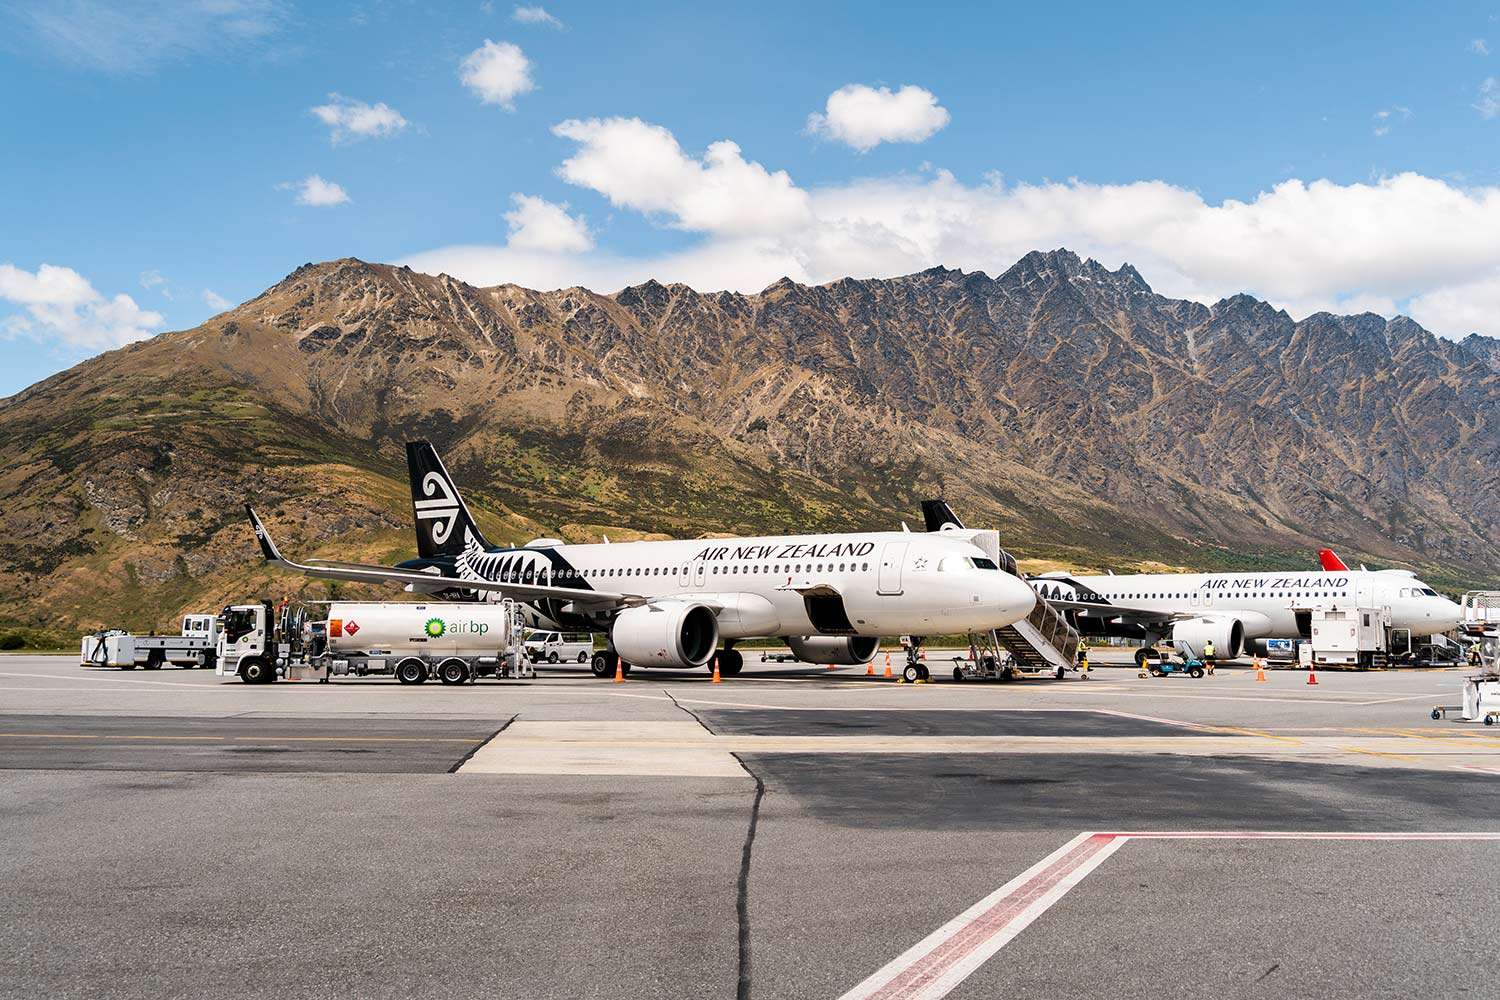 Avion, Air New Zealand, Aéroport de Queenstown, Nouvelle-Zélande / Air New Zealand airplane, Queenstown Airport, New Zealand, NZ